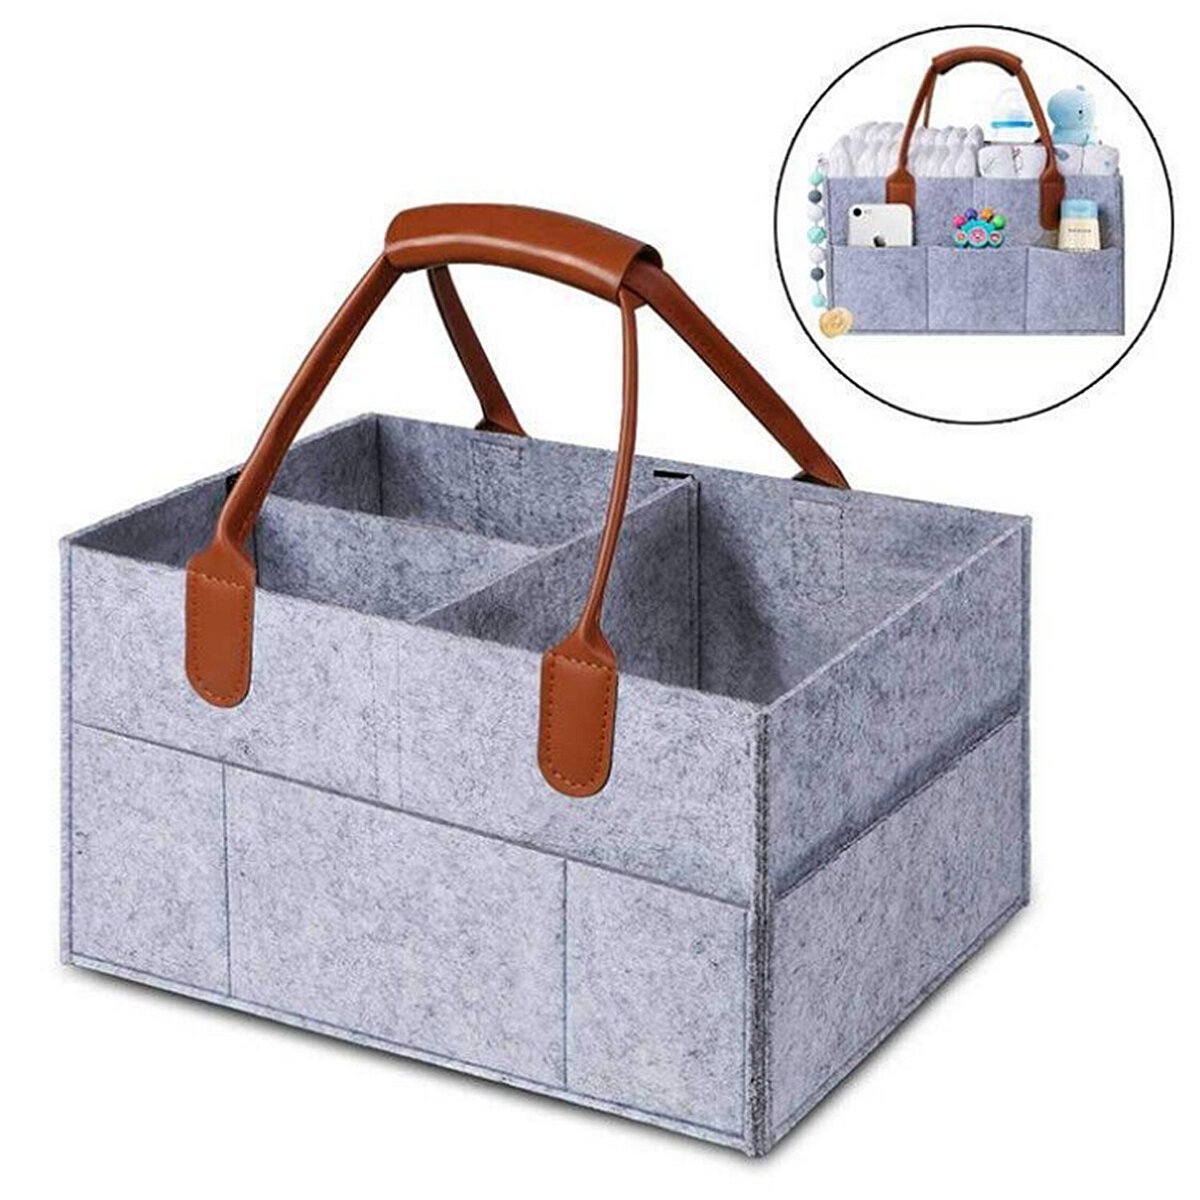 Filc pelenka táska összecsukható tároló táska Caddy változó pelenka kézitáska babatermékek